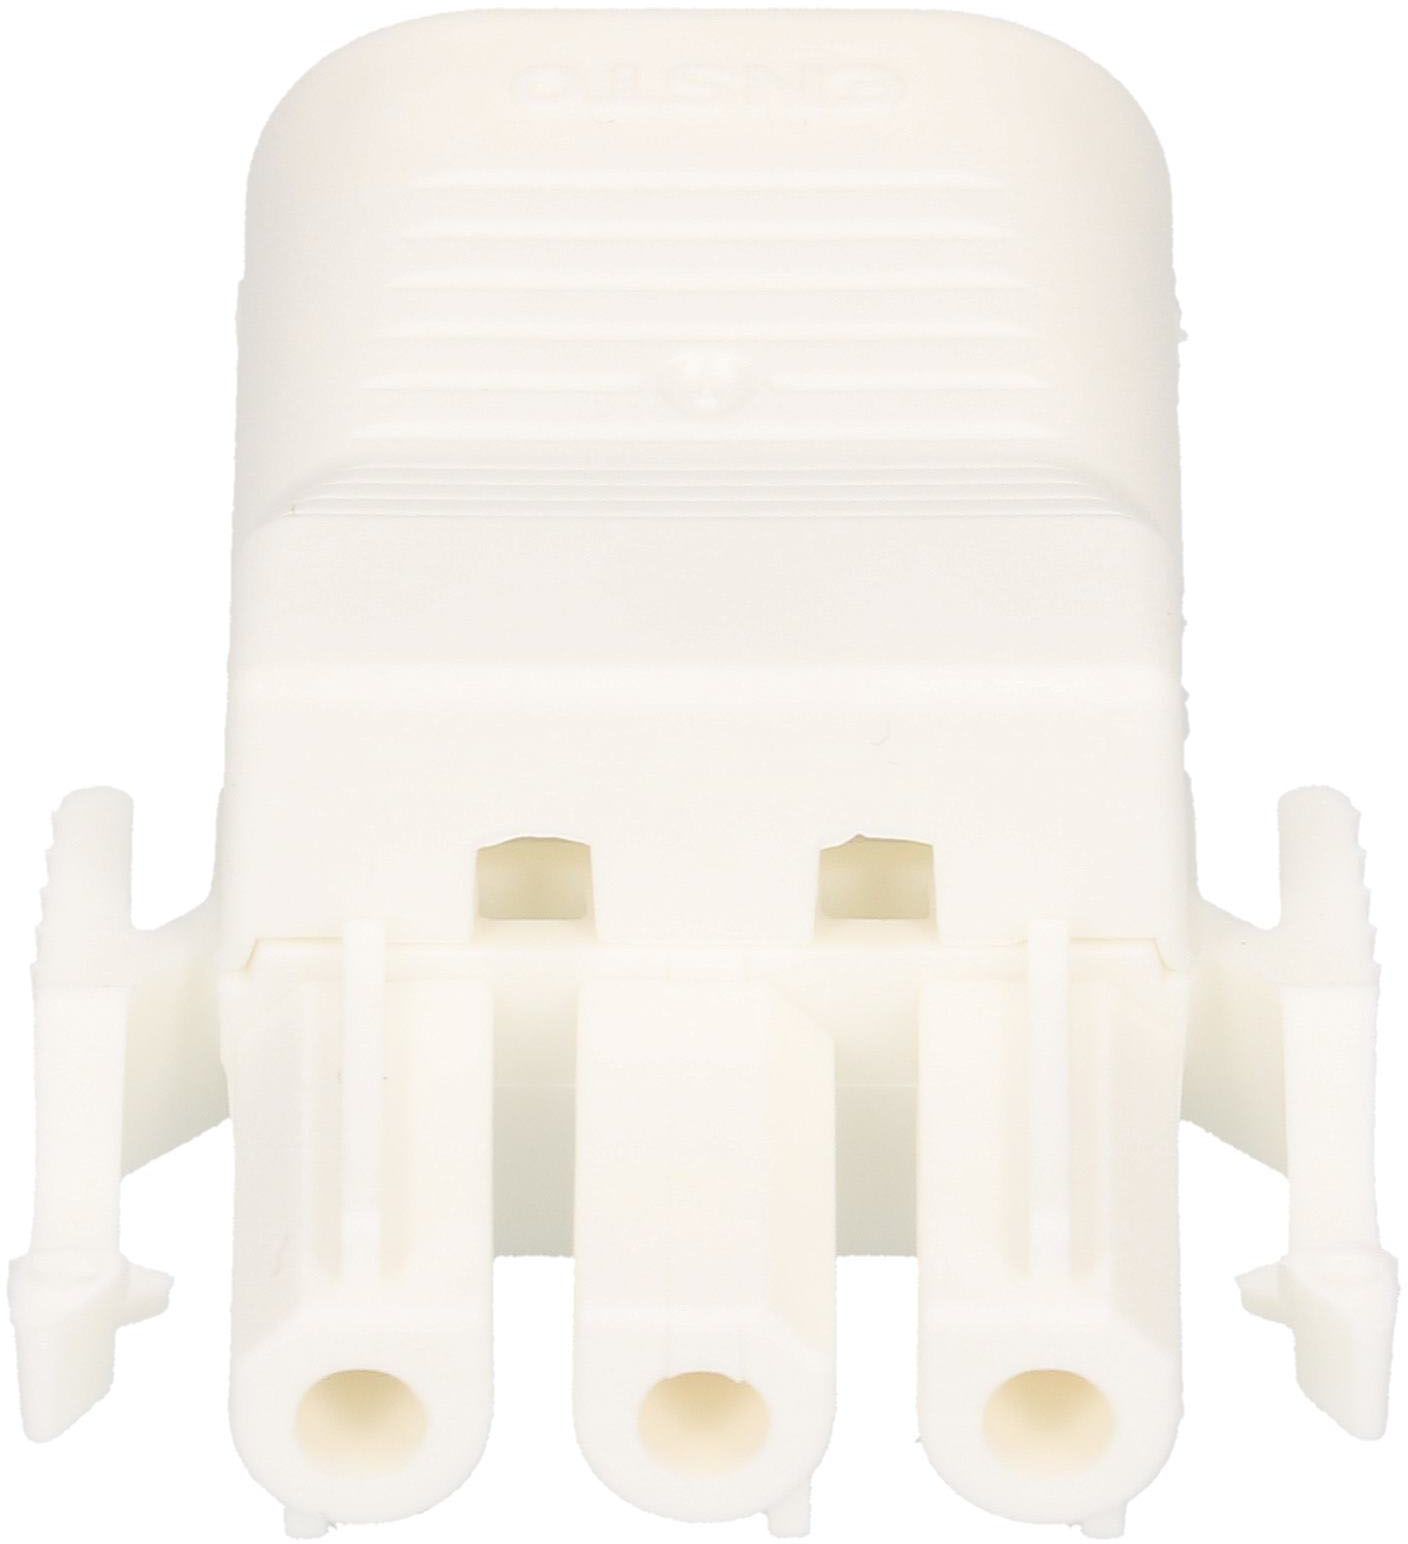 ENSTO-socket 3-pol white 250V 16A 2,5mm2